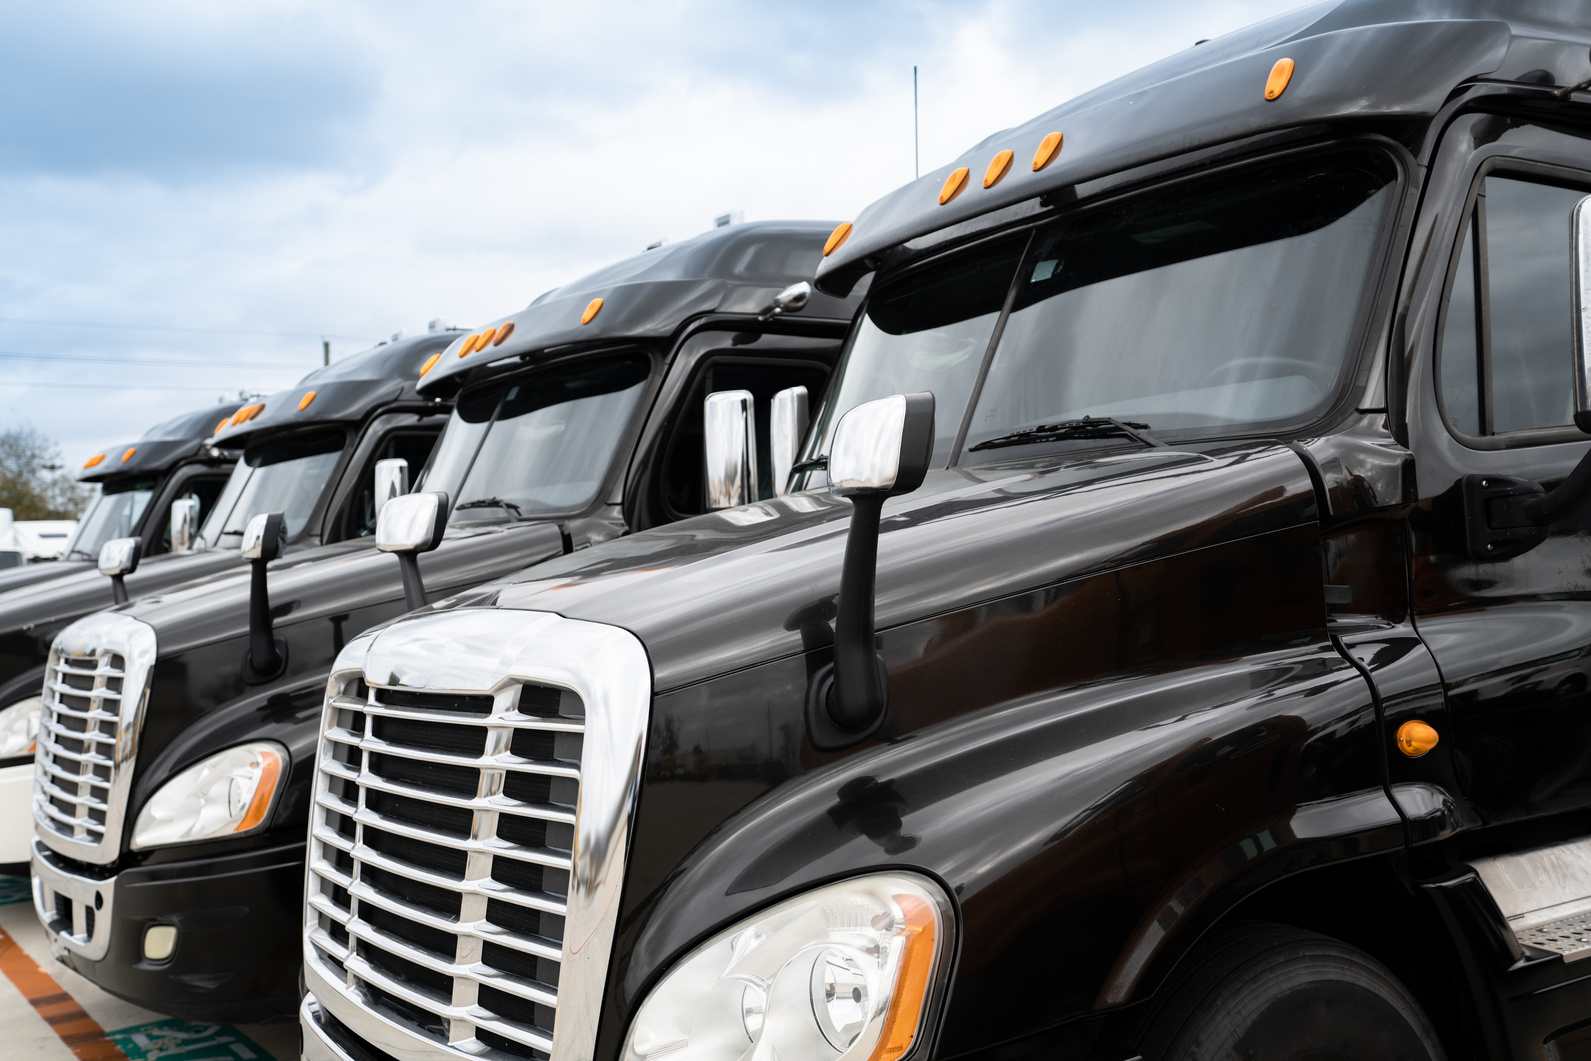 Fleet of black 18 wheeler commercial semi-trucks